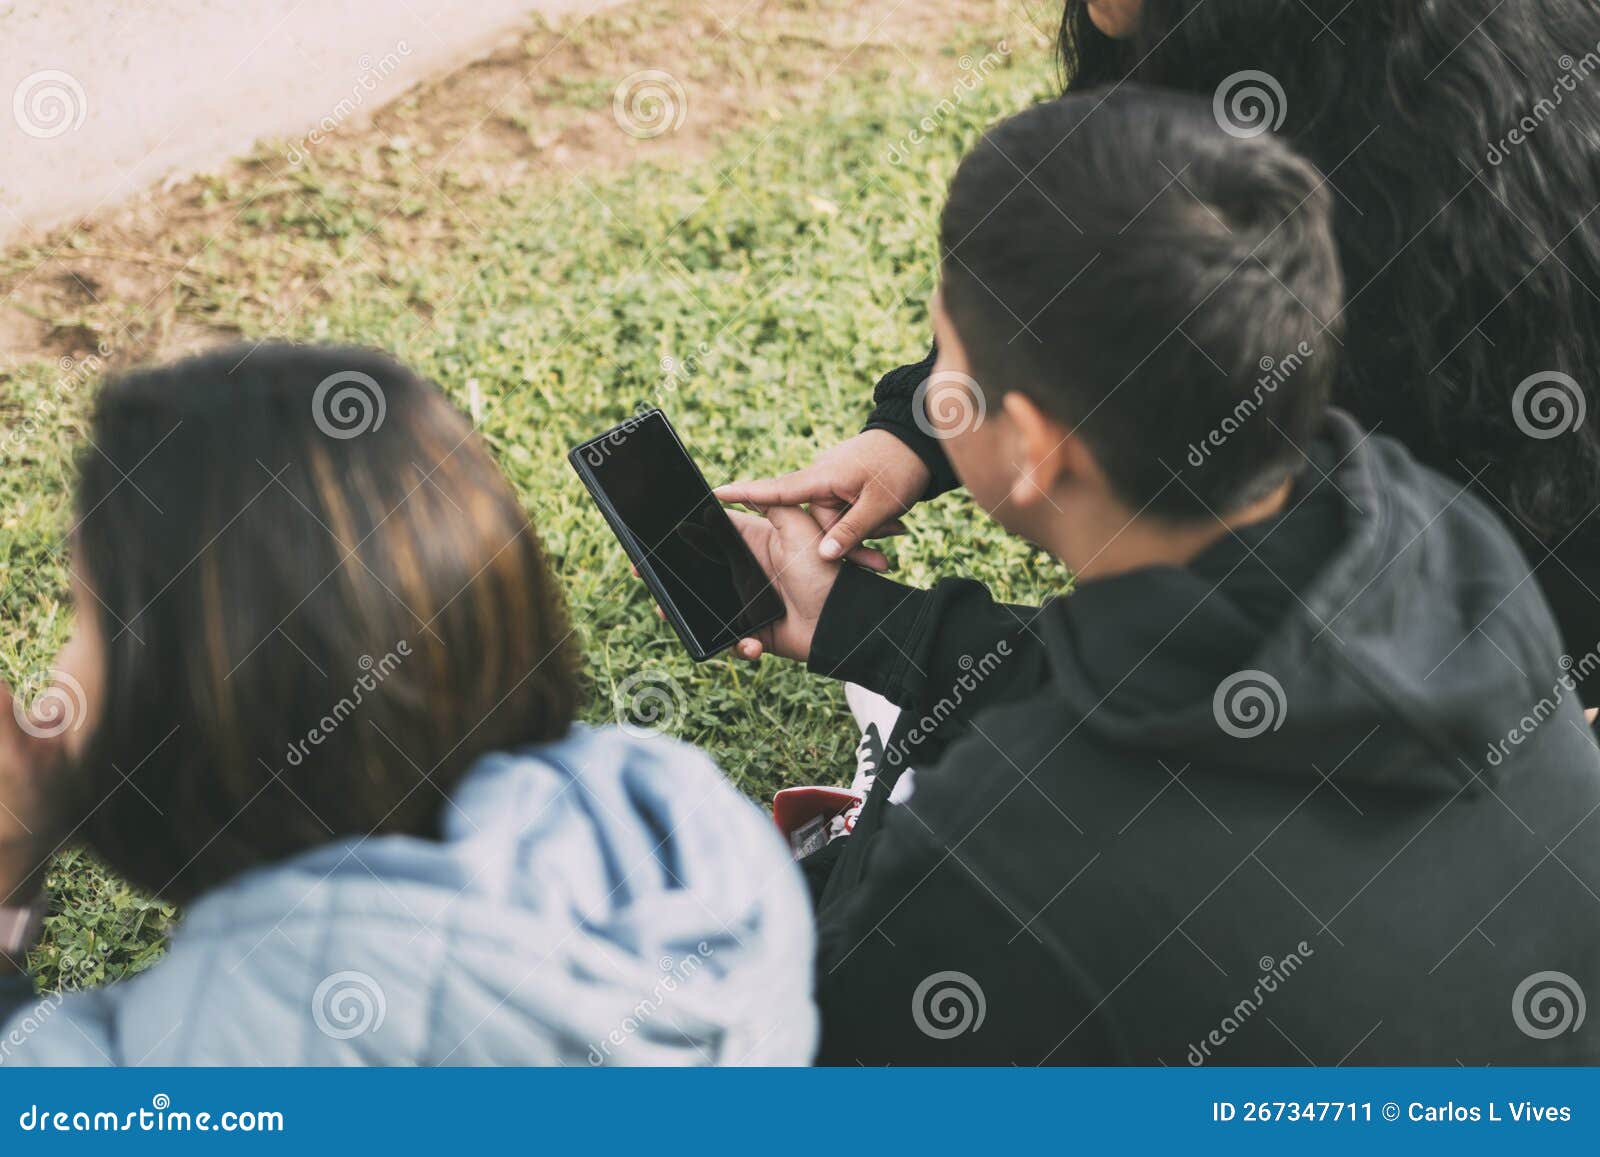 vista desde atras grupo de latinos riendo sentados en el suelo en un parque con un smartphone